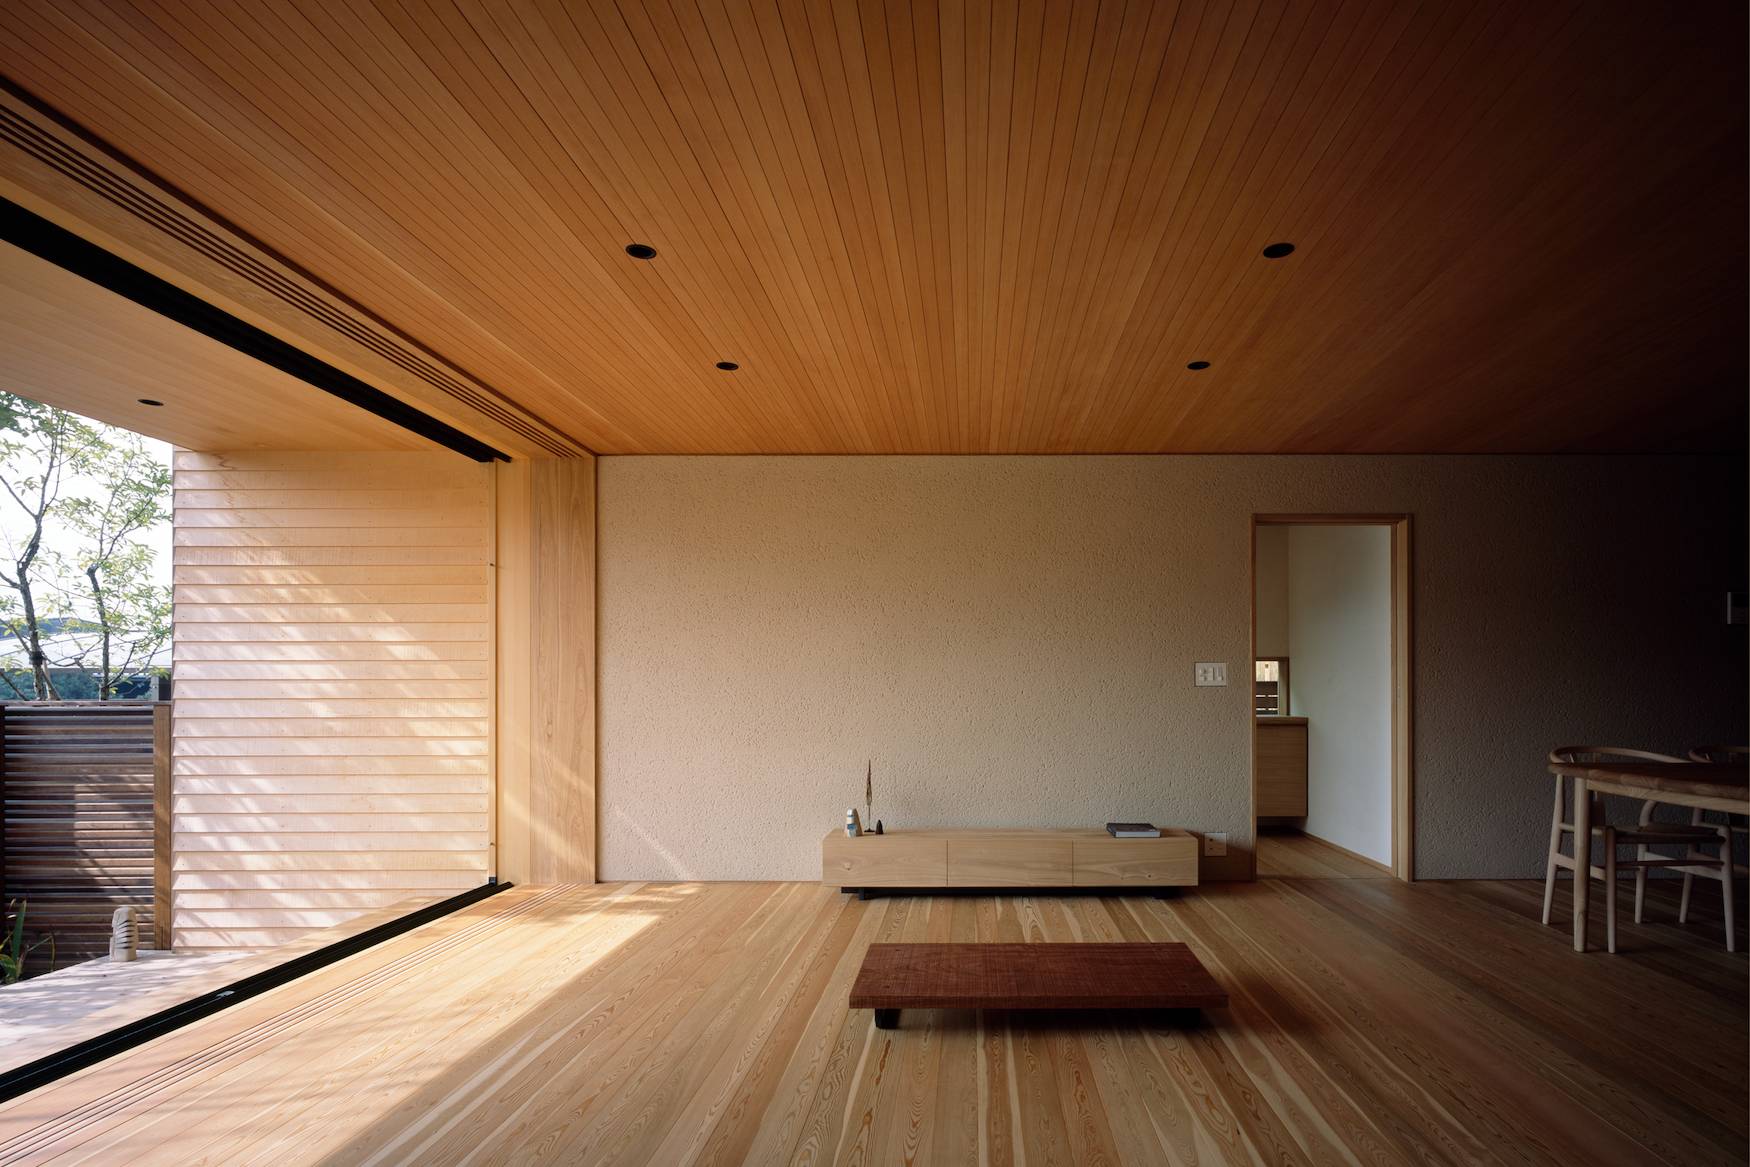 日本西下太一建筑设计事务所的室内设计作品house of inari